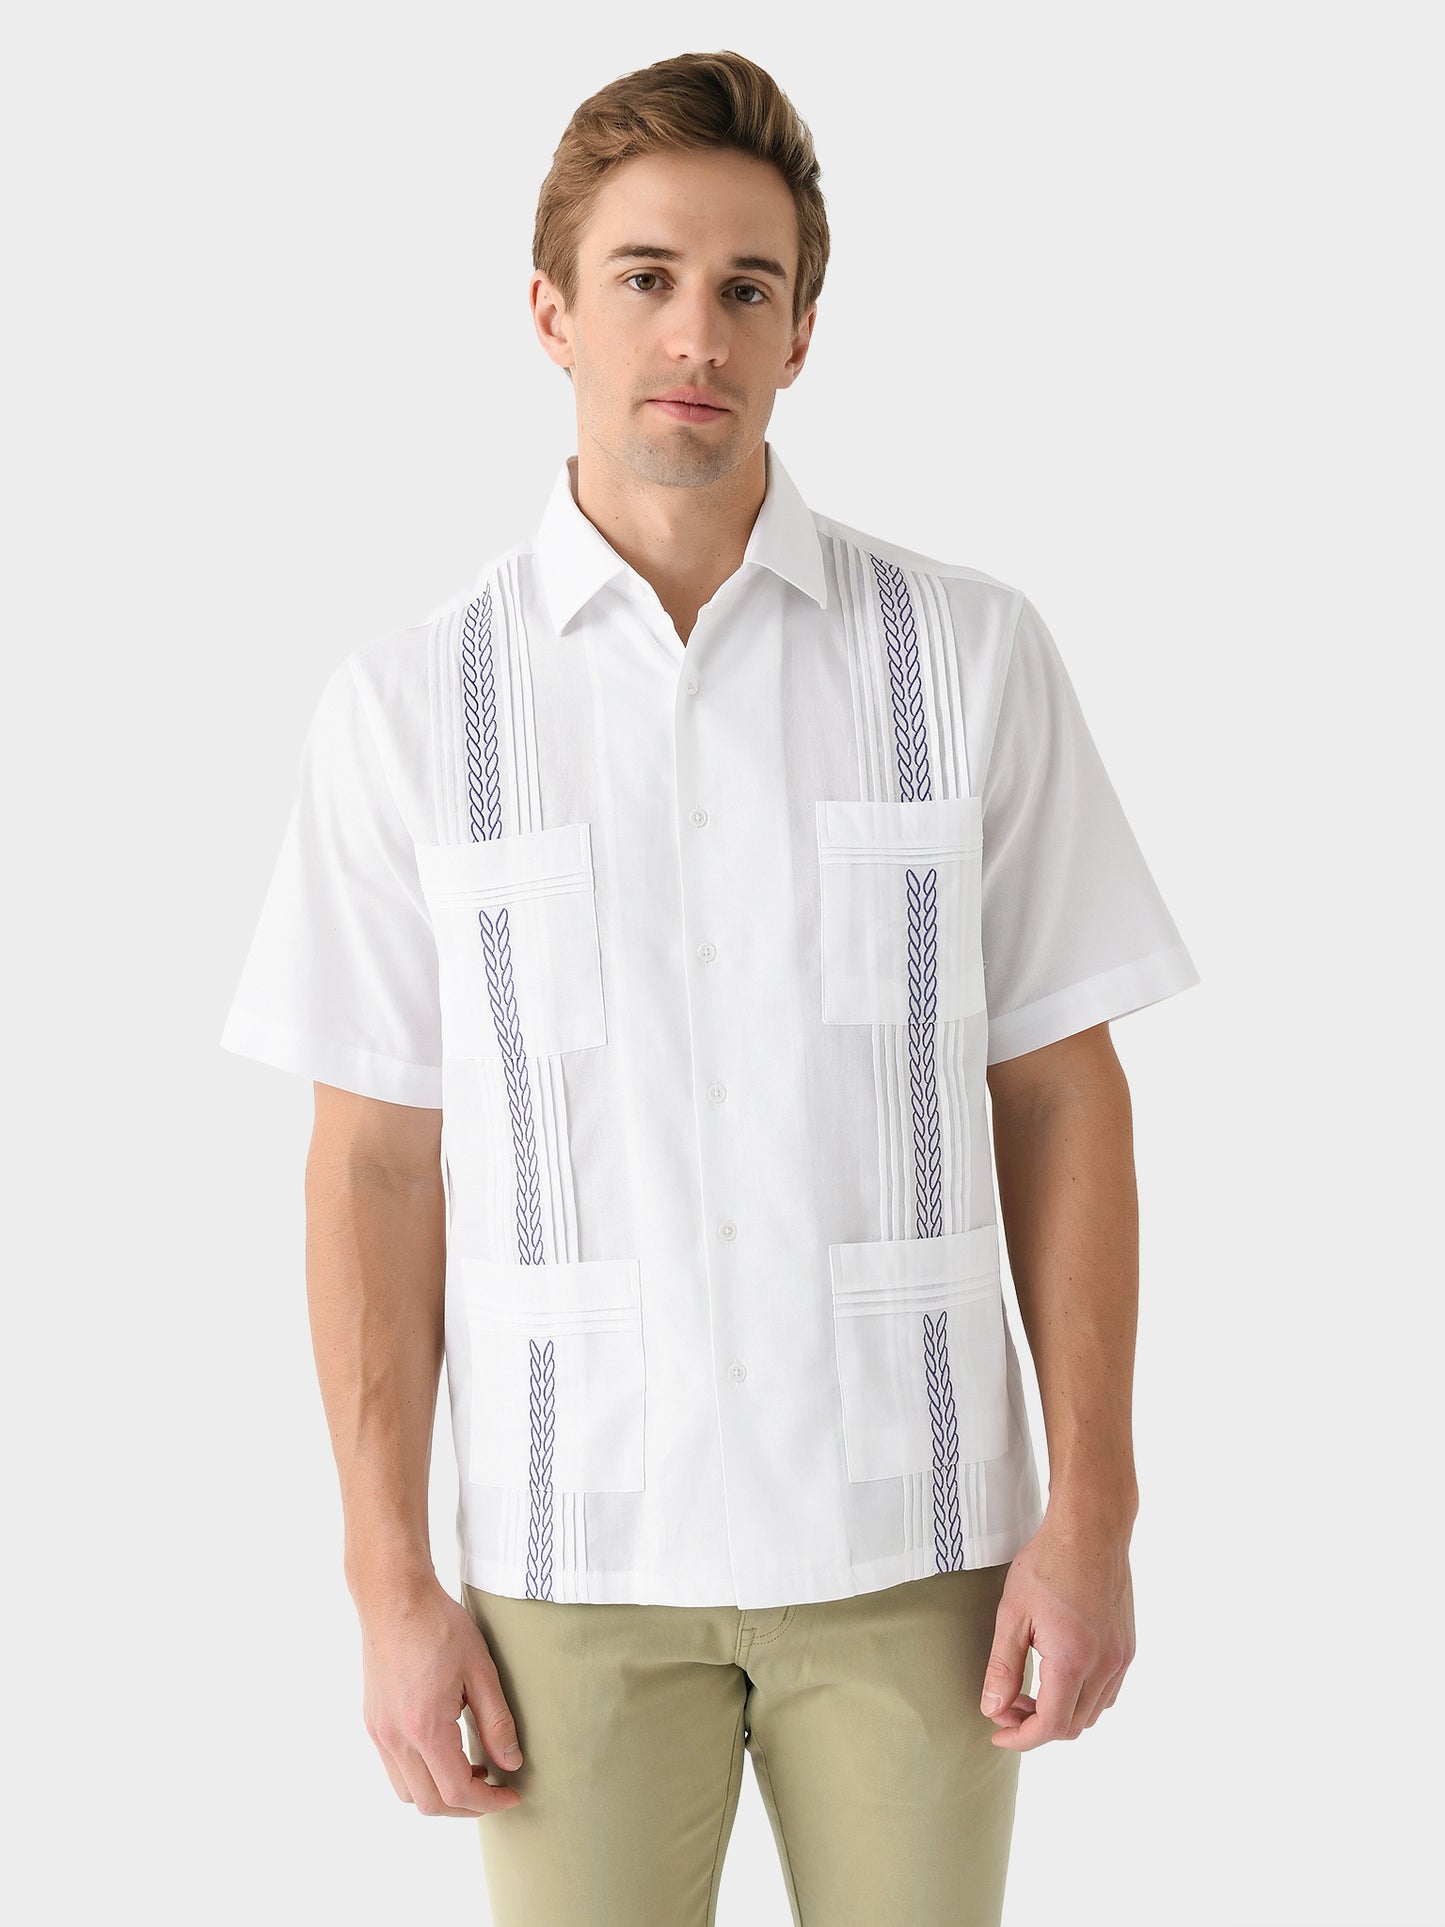 Saint Bernard Men's Guayabera Piqué Shirt